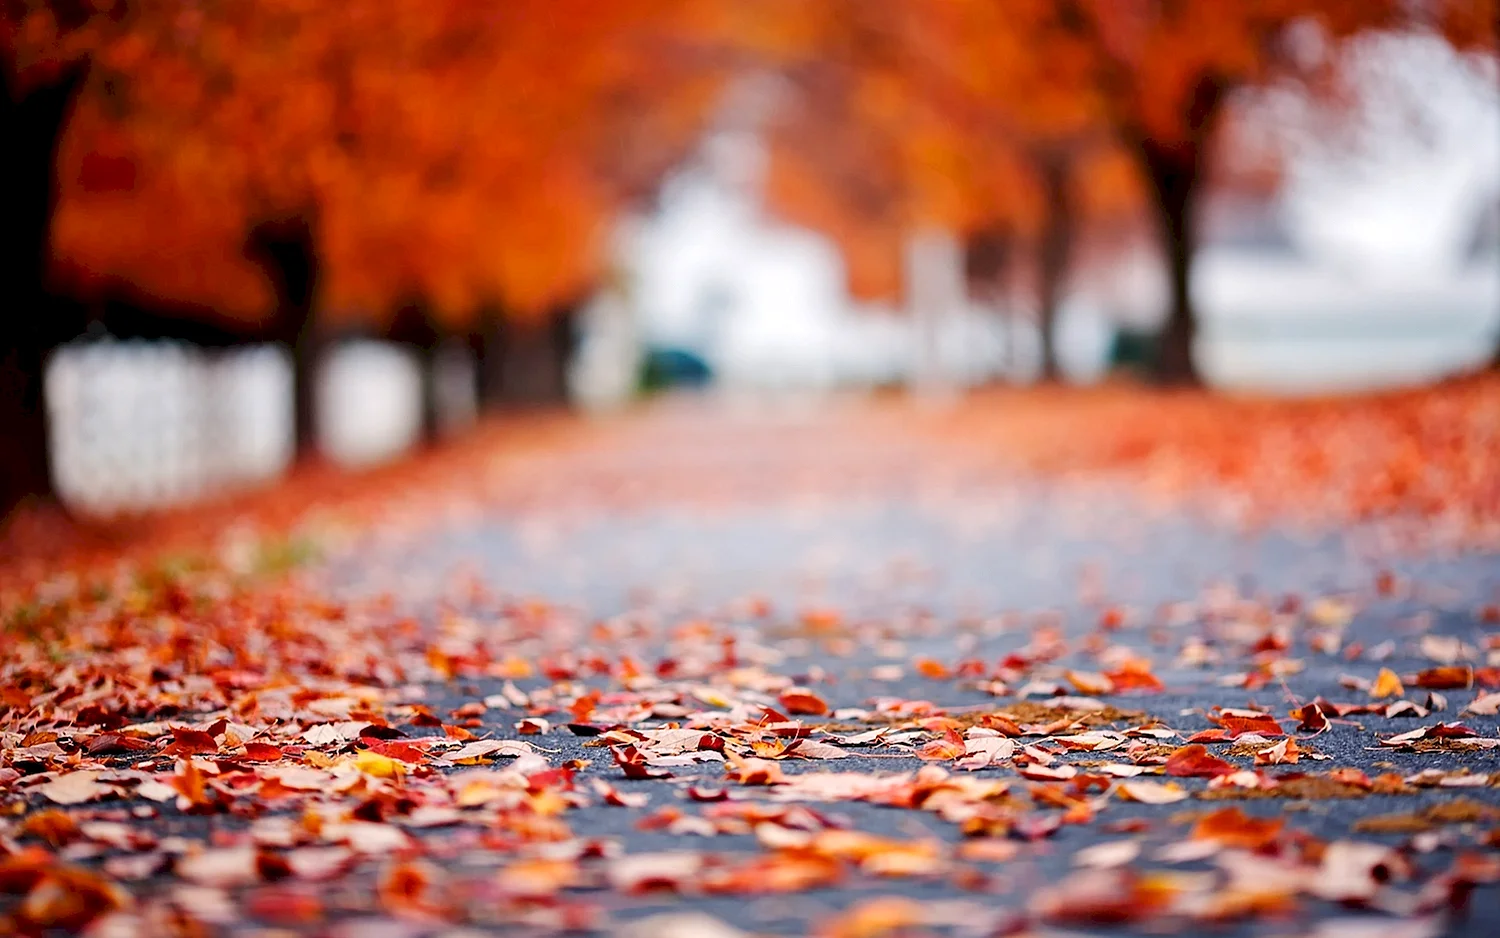 Осенние листья на асфальте